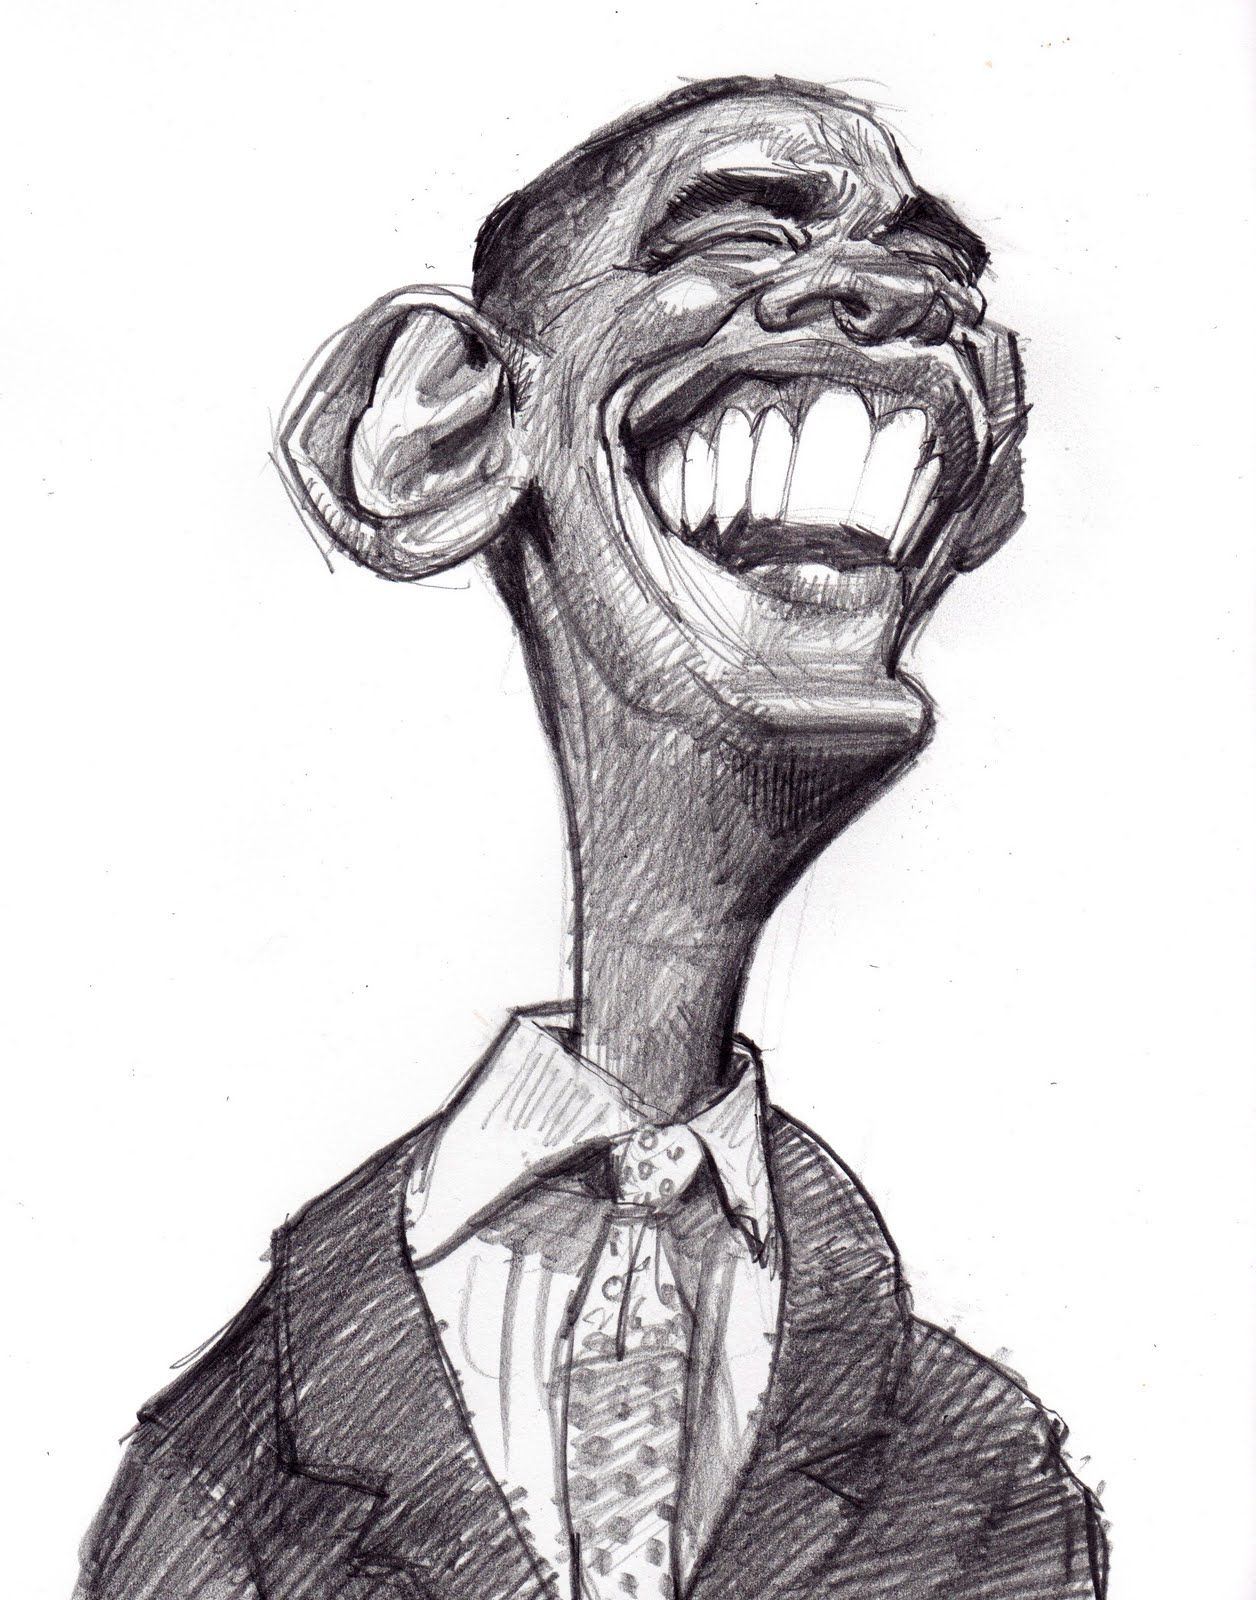 Сатирический образ шарж. Сатирический портрет Обама. Сатирический портрет Артура пирожкова. Сатирический портрет Милохина. Сатирические образы человека.